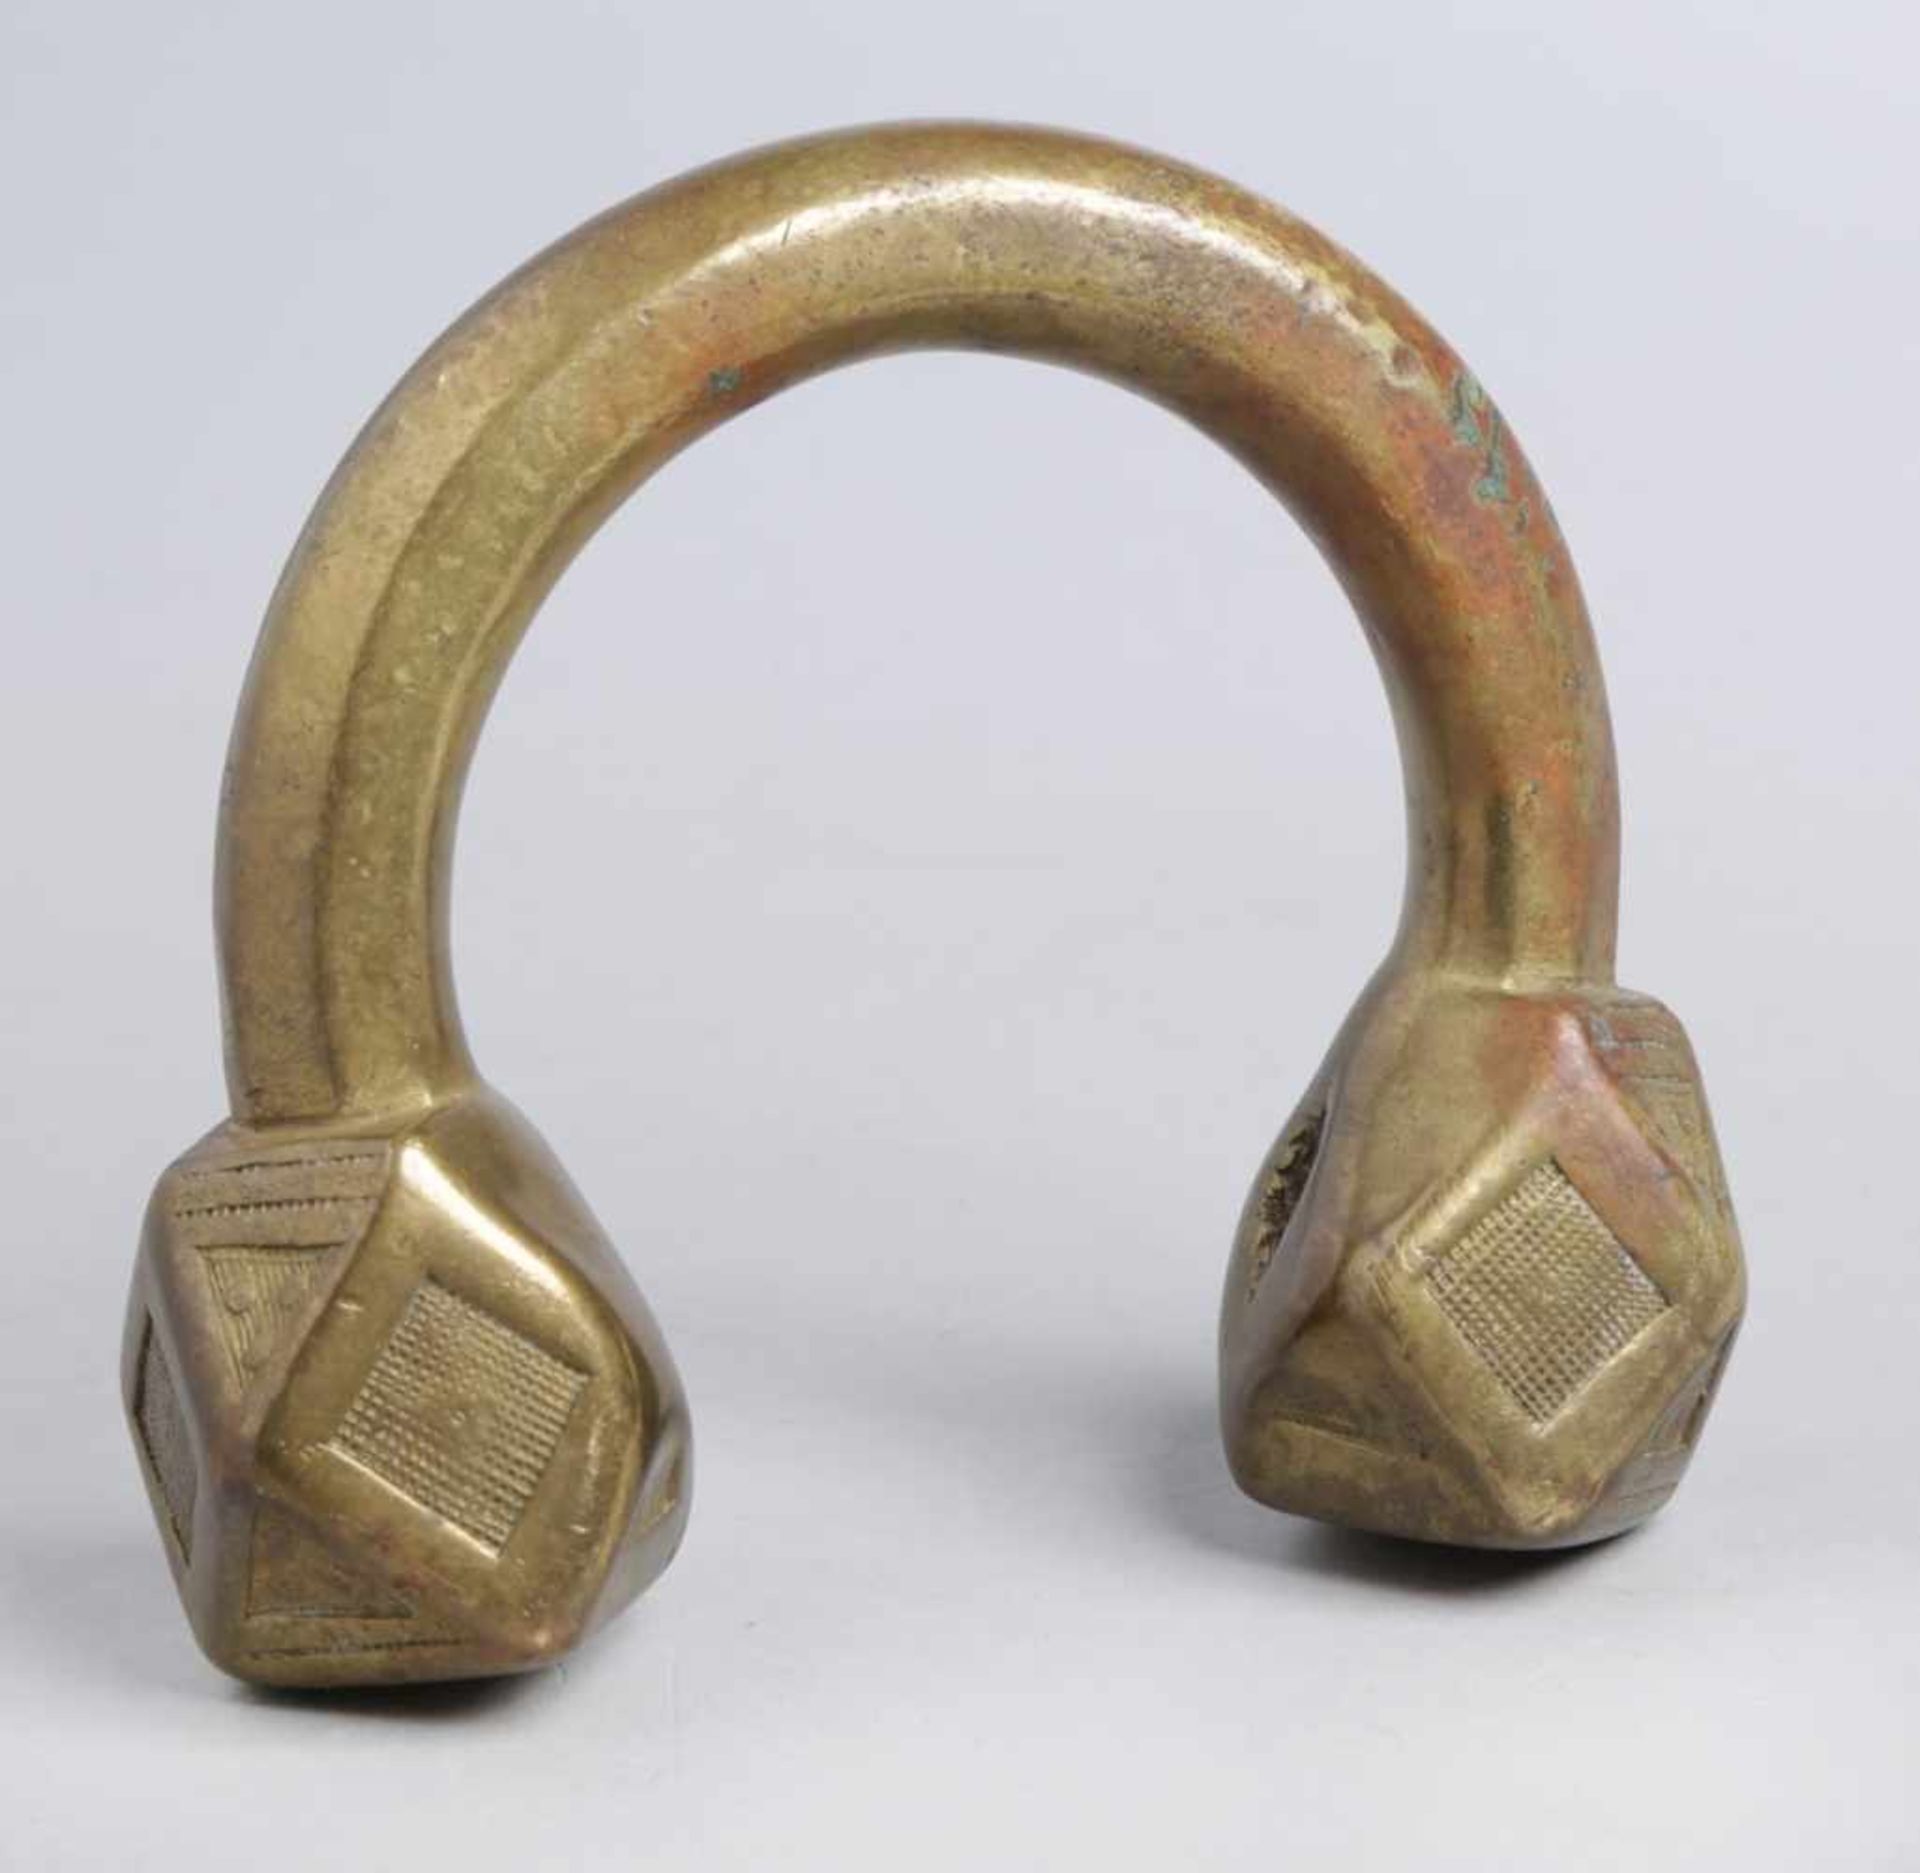 Bronze-Reif, West-Afrika, Manille, sog. Primitivgeld, gebogte, offene Form mit vier- unddreieckig